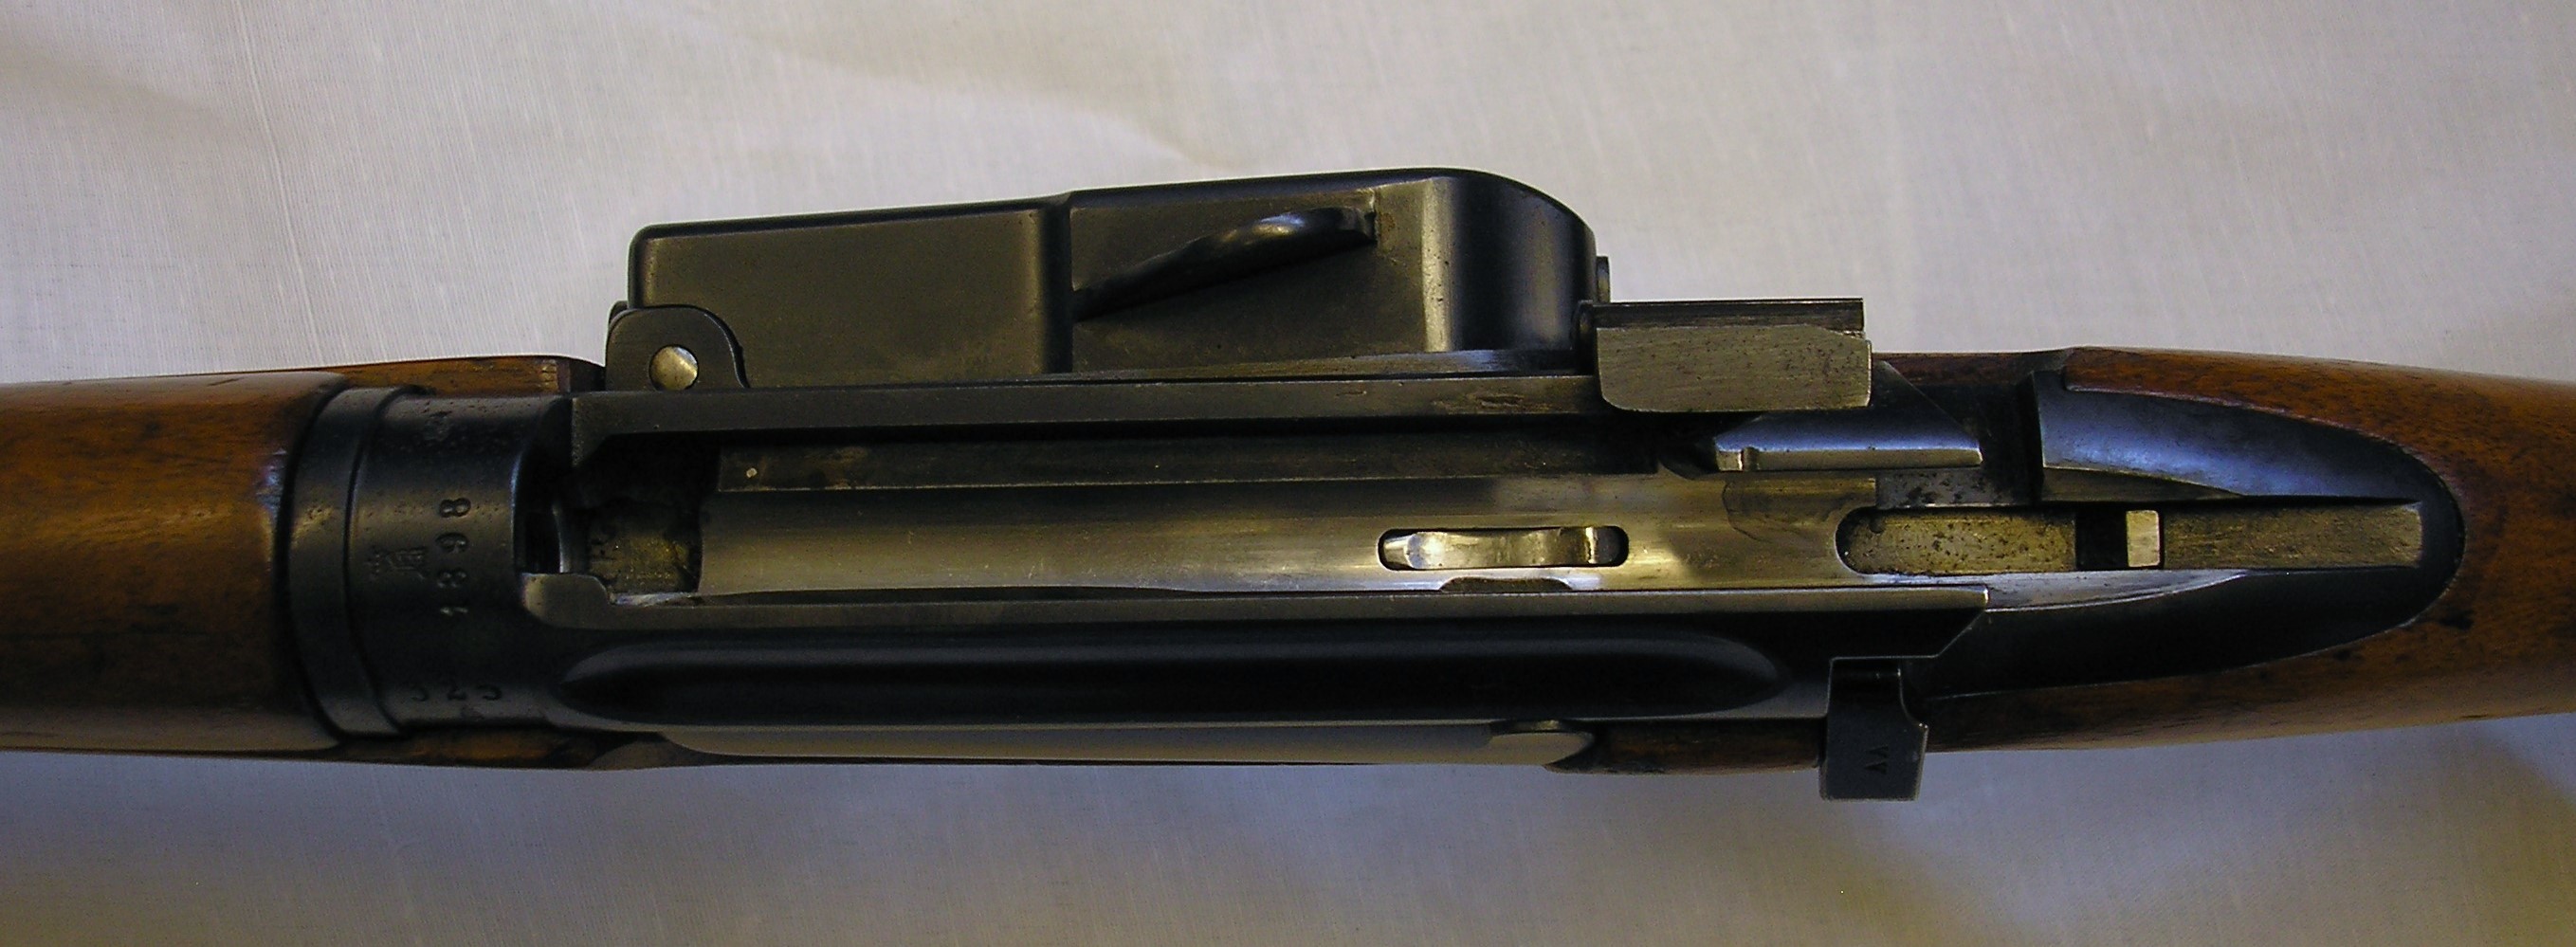 ./guns/rifle/bilder/Rifle-Kongsberg-Krag-M1894-1898-privat-325-14.JPG